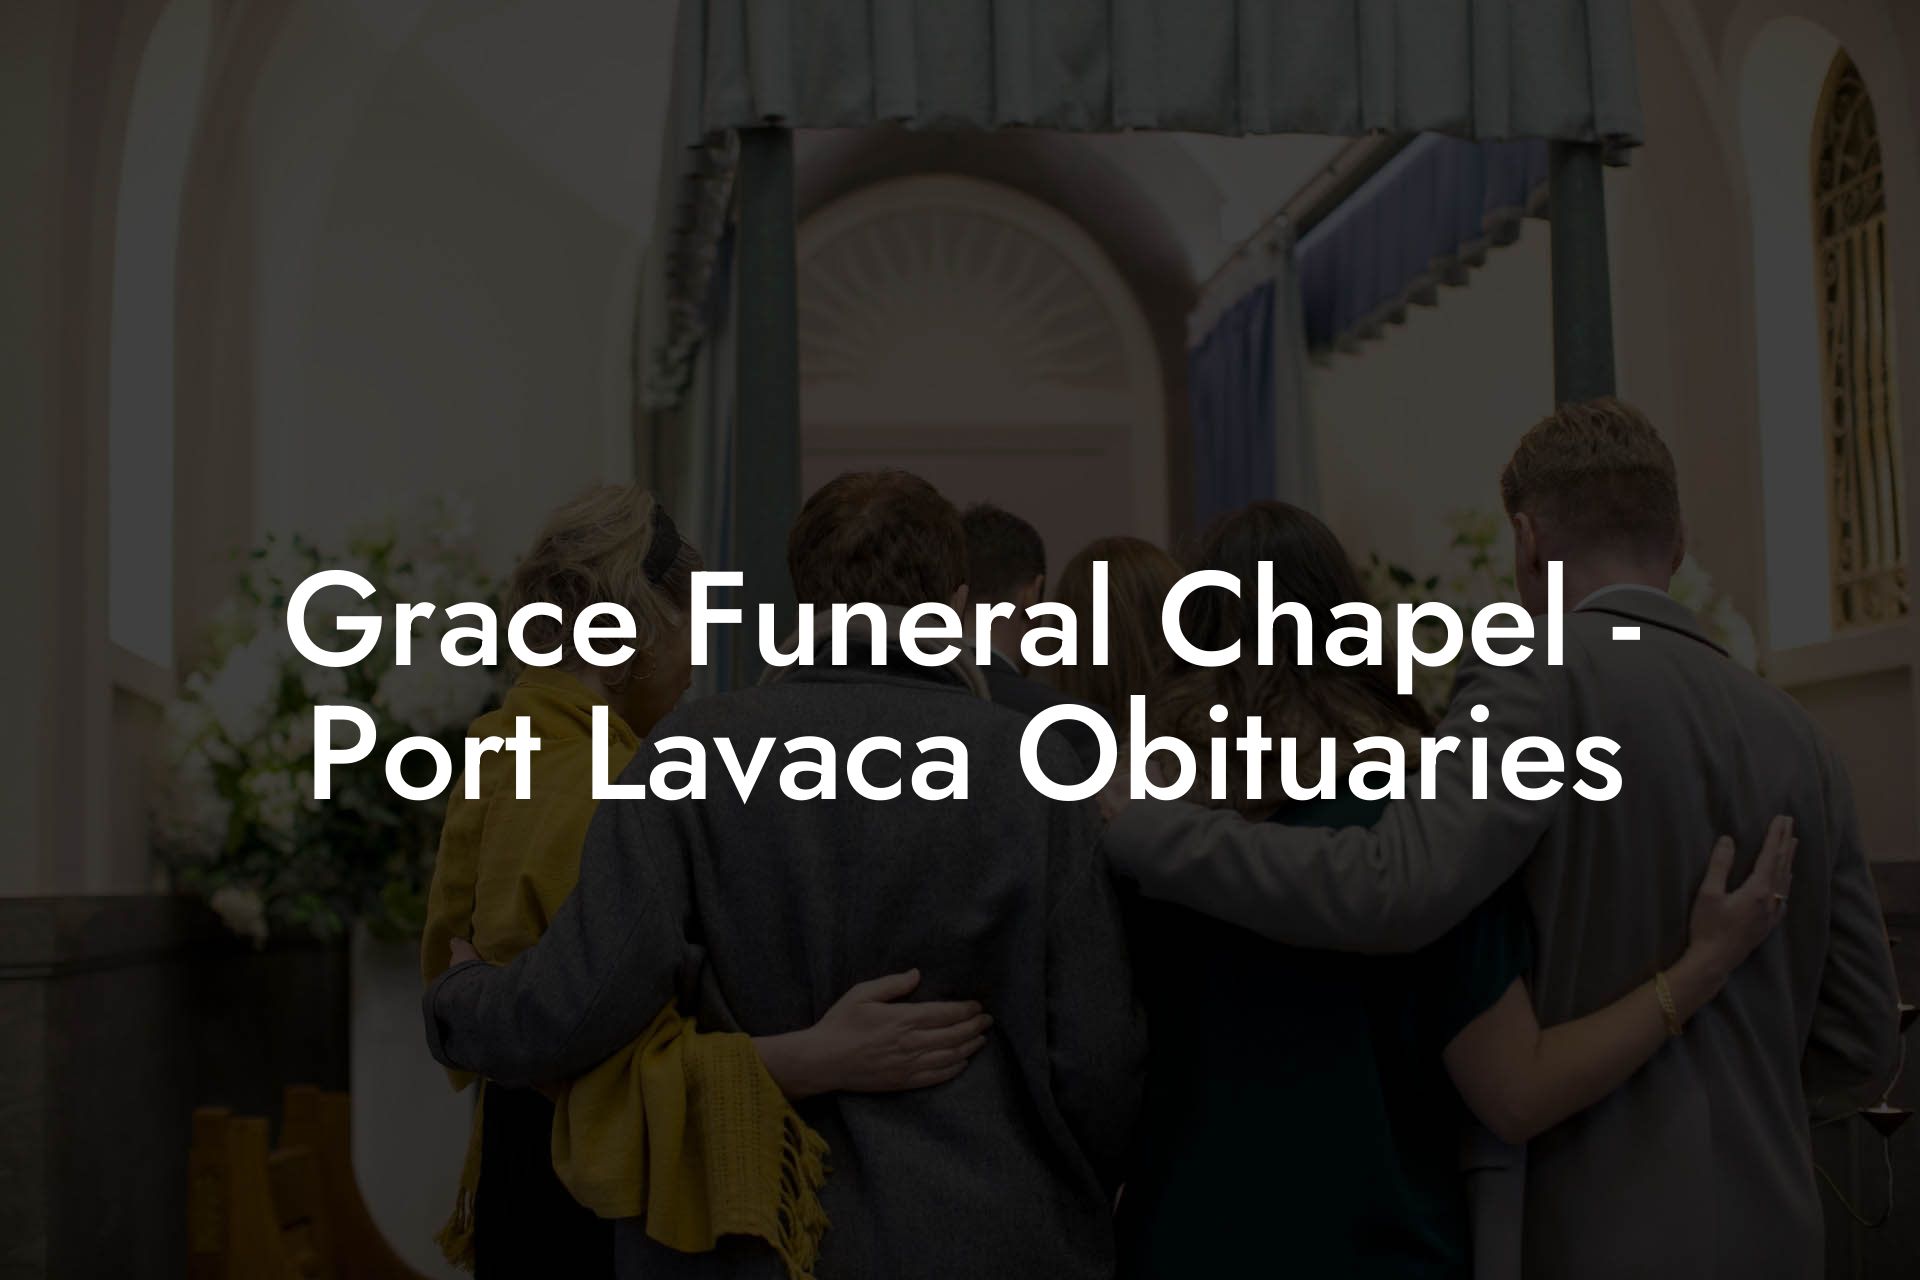 Grace Funeral Chapel - Port Lavaca Obituaries